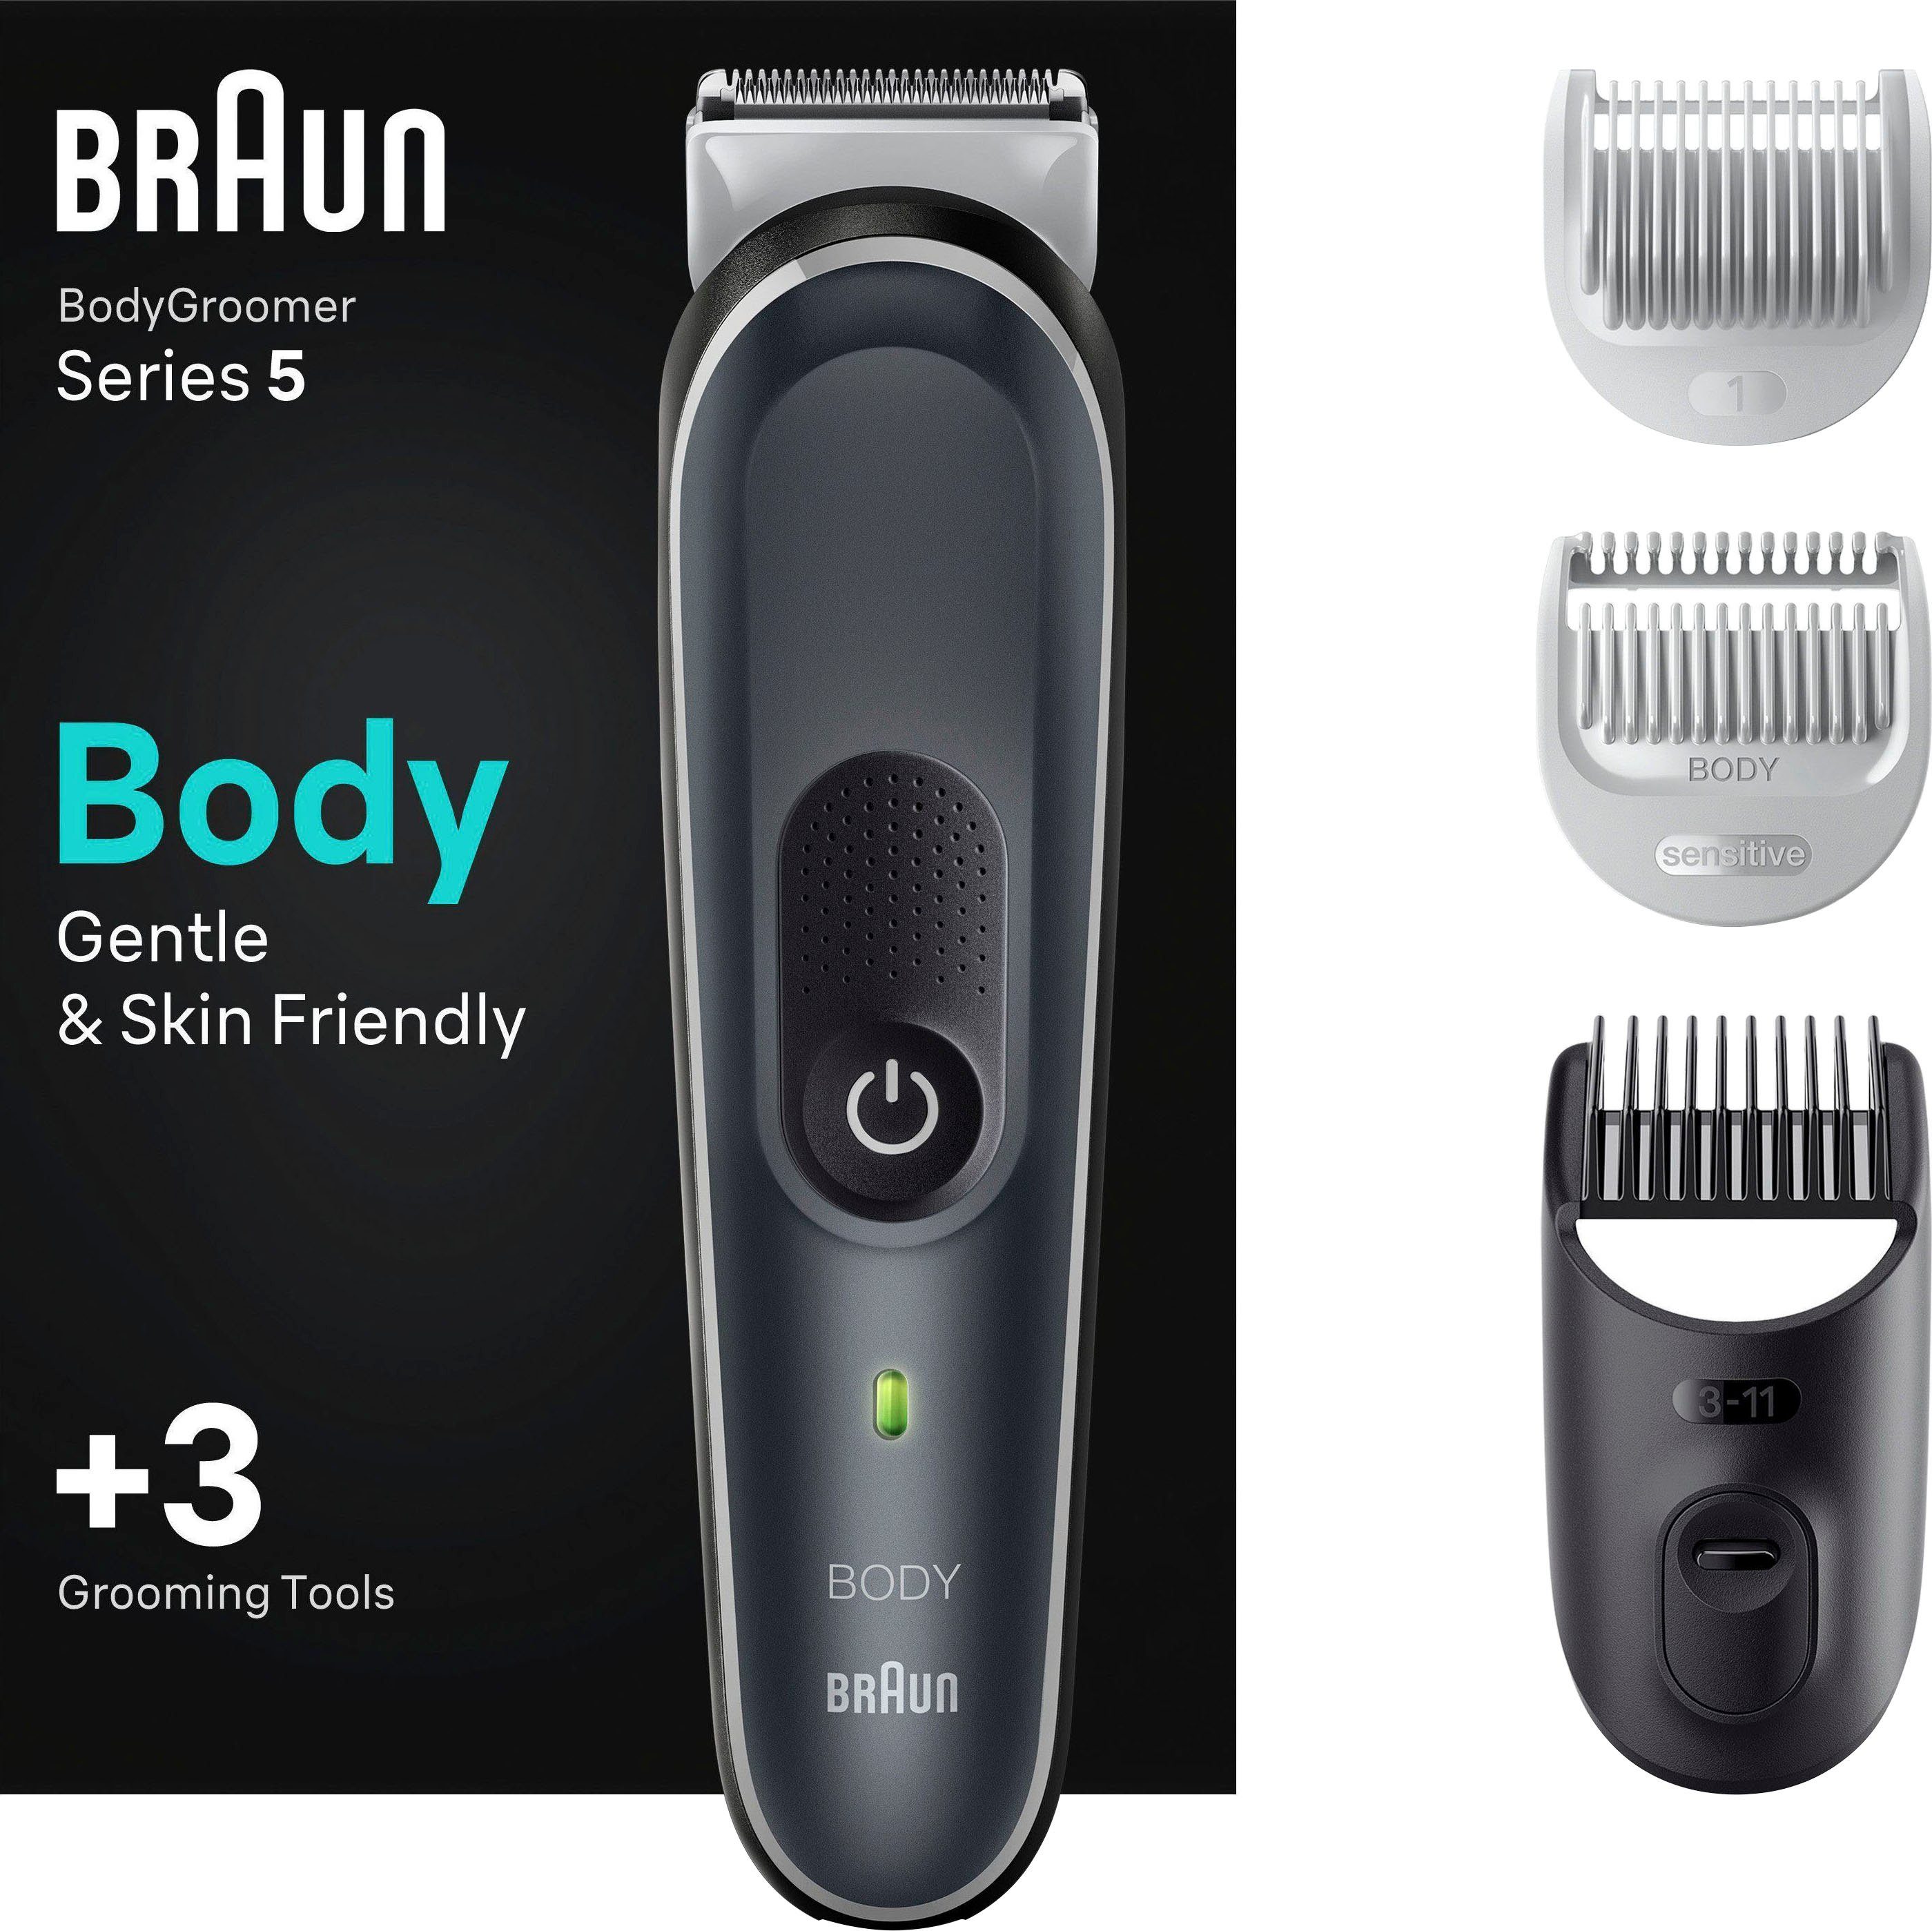 Wasserdicht Bodygroomer SkinShield-Technologie, Braun BG5340, Haarschneider